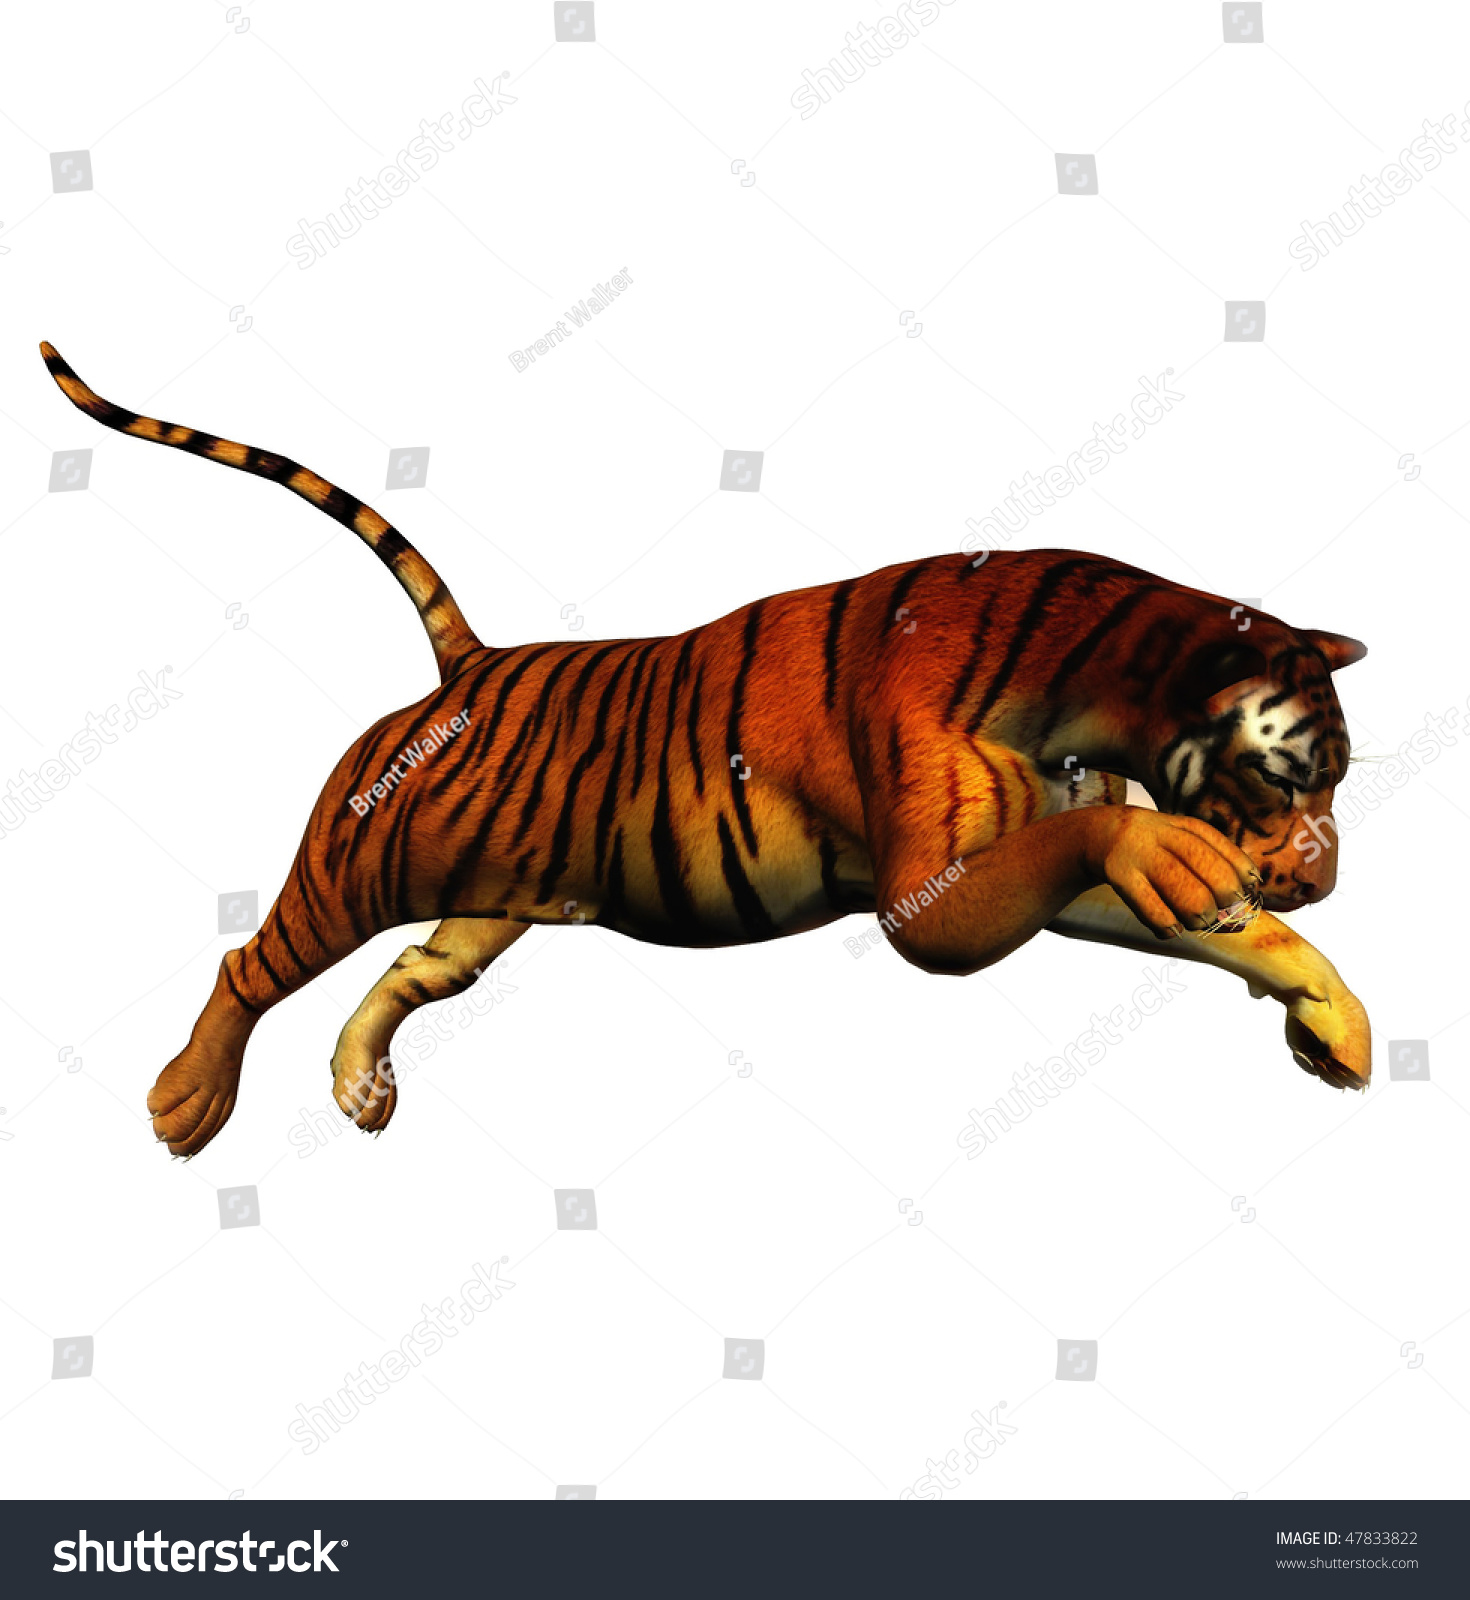 Jumping Tiger Illustration - 47833822 : Shutterstock